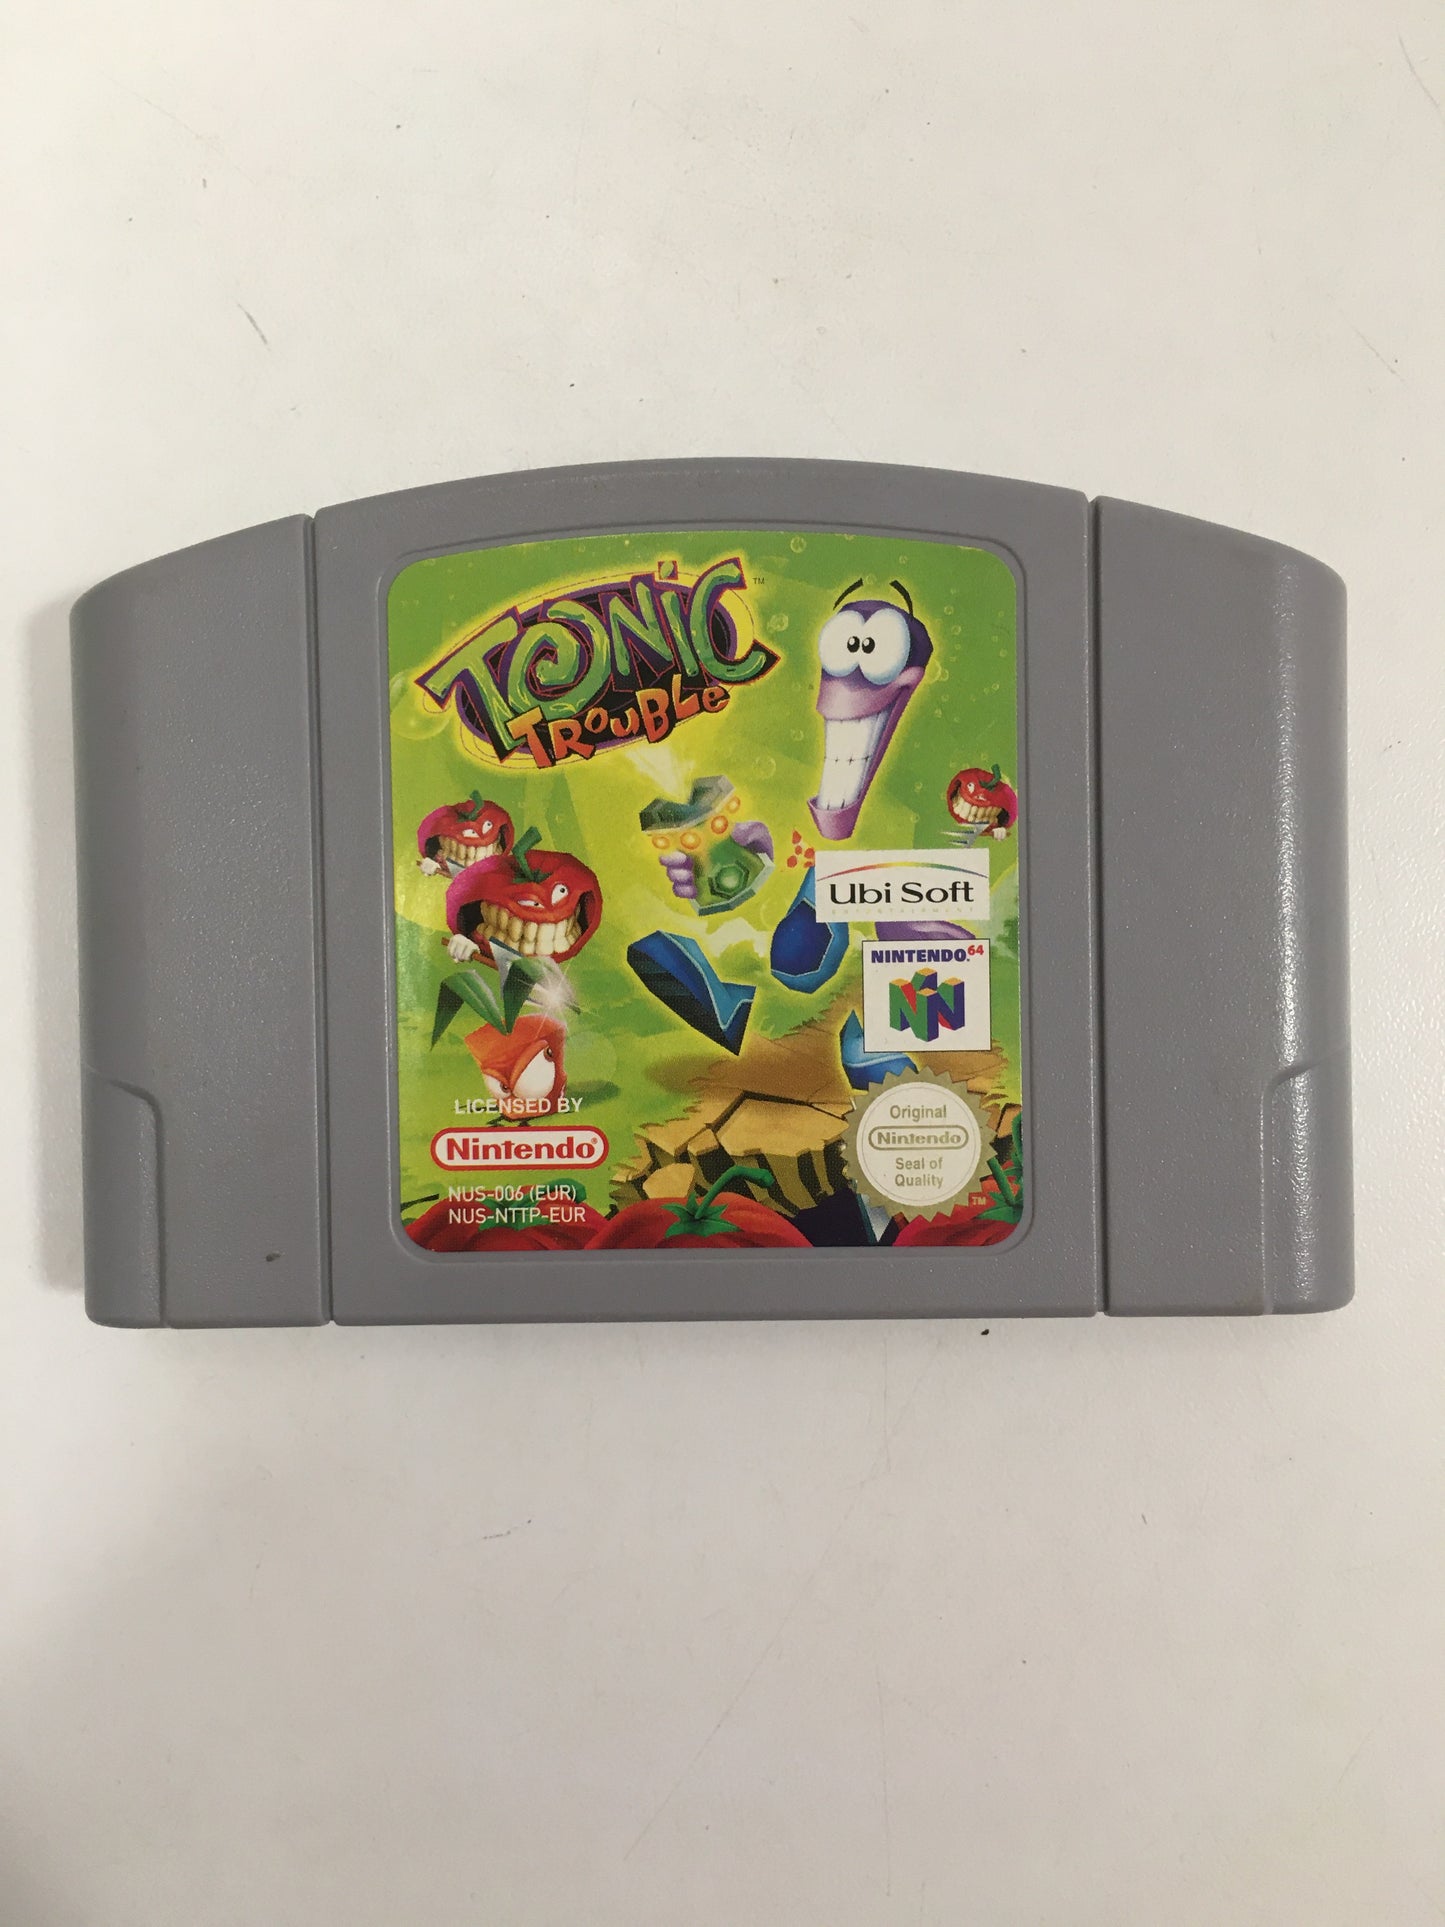 Tonic trouble Nintendo 64